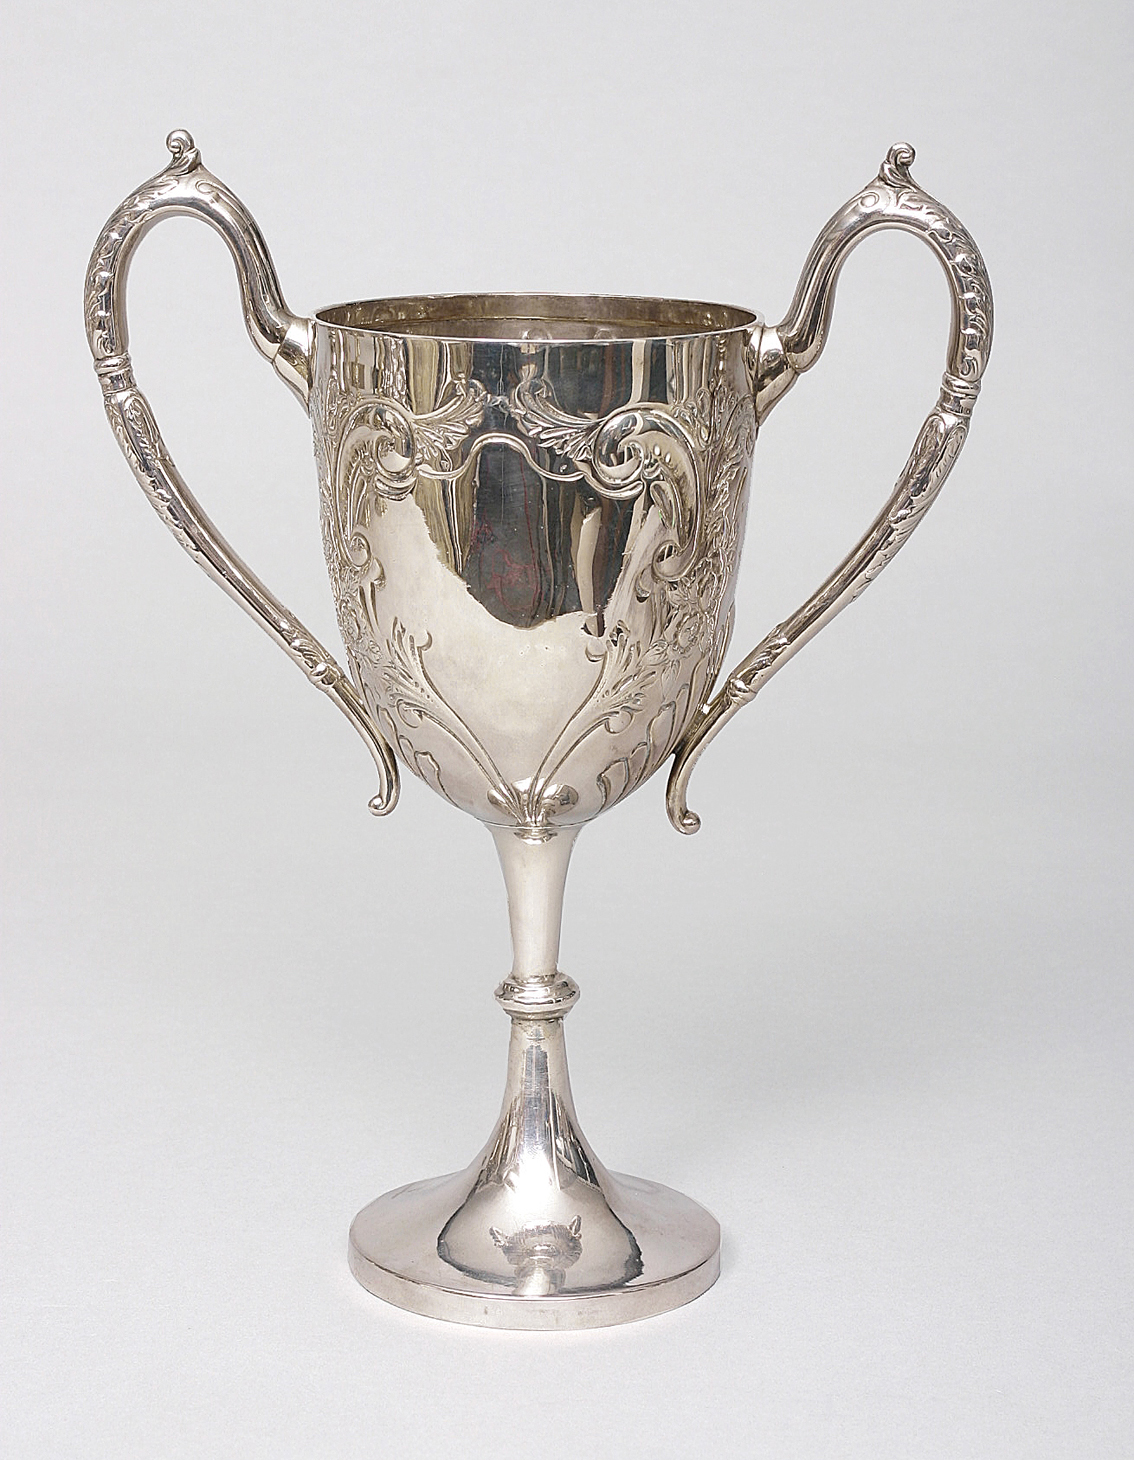 Englischer Jugendstil-Pokal mit floralem Reliefdekor